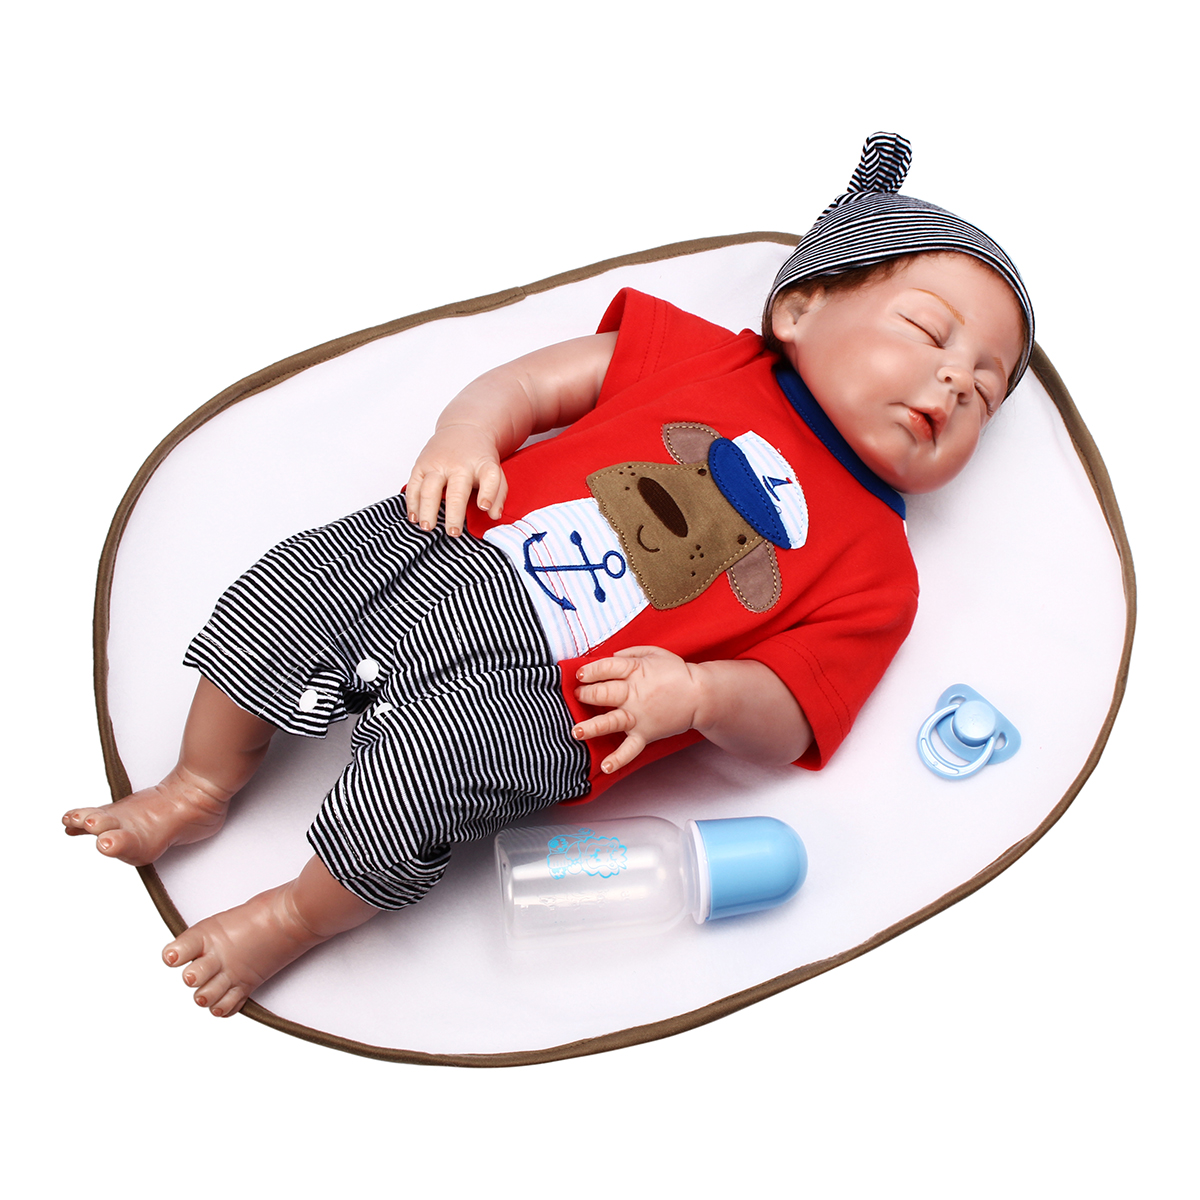 

NPK 23 дюймов 58см Reborn Baby Sleeping Soft Силиконовый Кукла Handmade Lifeike Baby Girl Куклаs Play House Toys День рождения